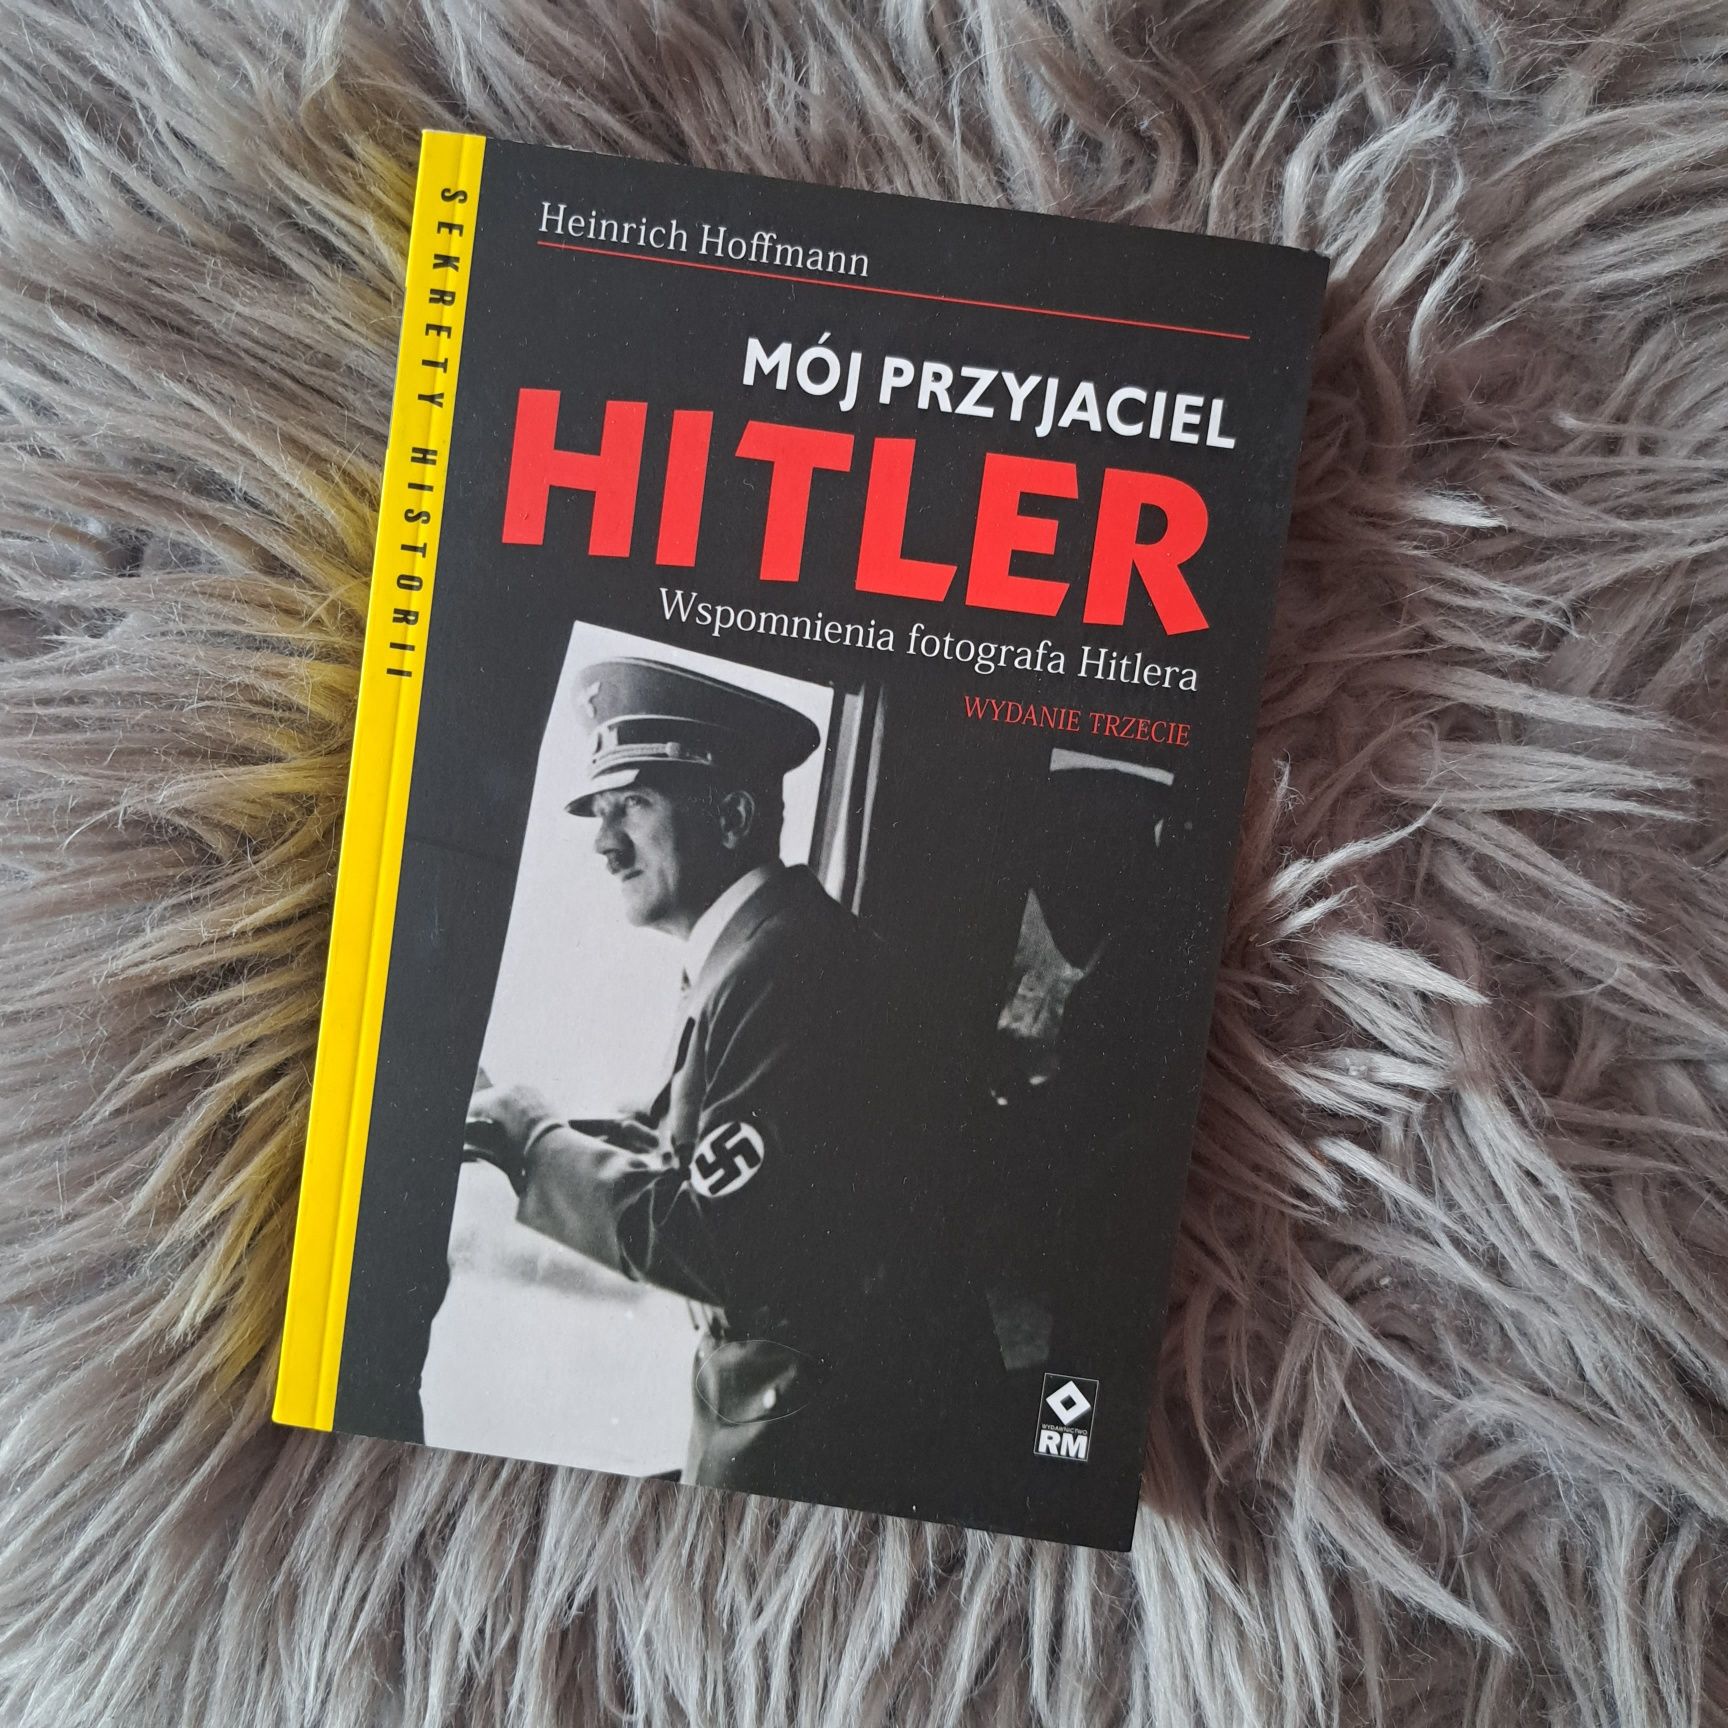 Mój przyjaciel Hitler Wspomnienia fotografa Hitlera wydanie trzecie